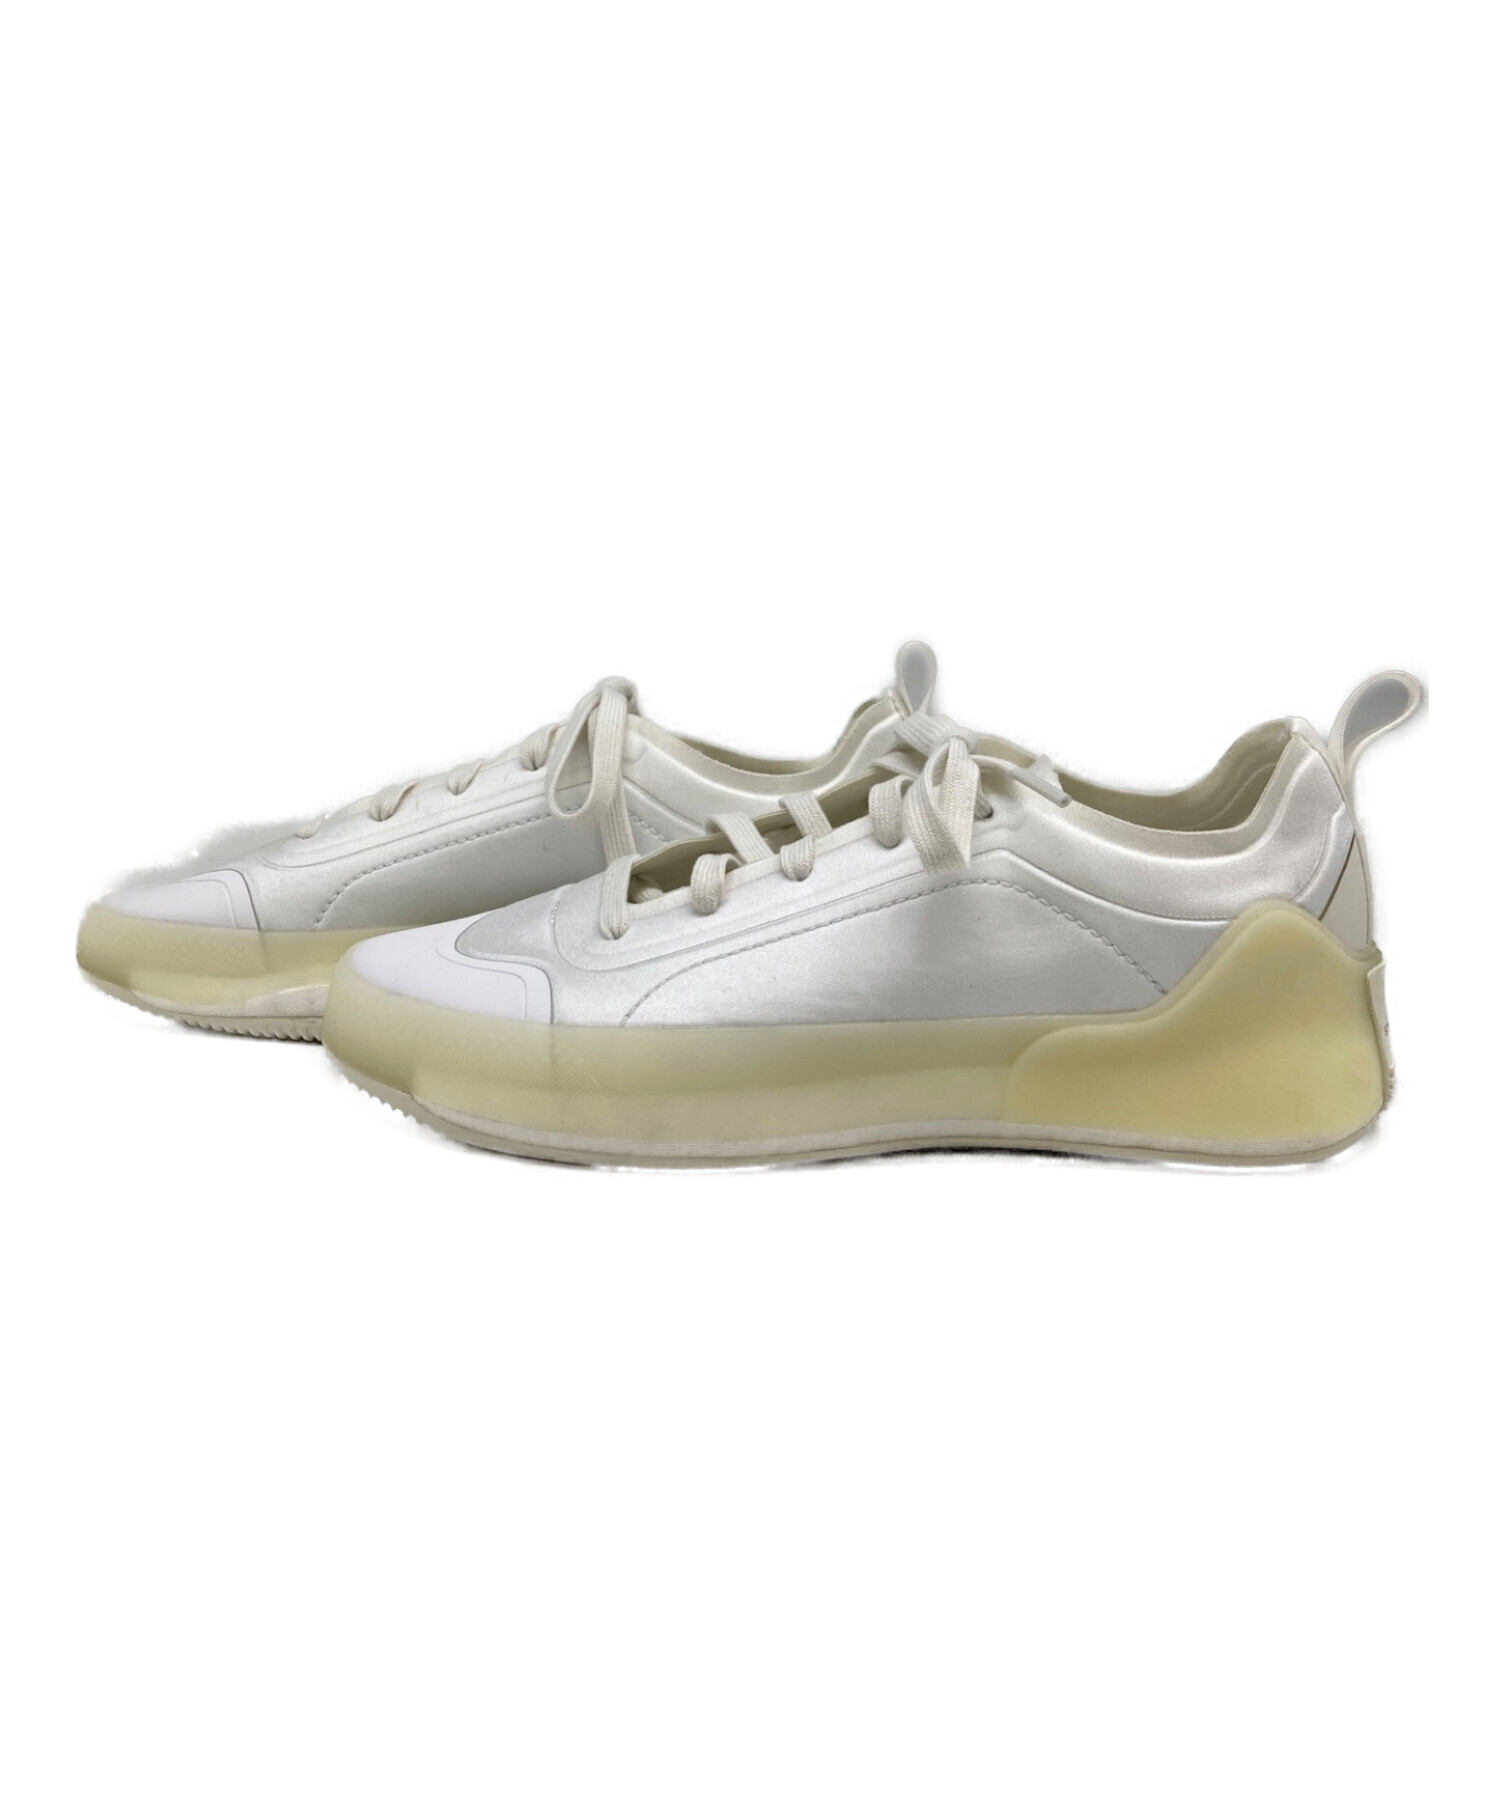 adidas (アディダス) STELLA McCARTNEY (ステラマッカートニー) スニーカー ホワイト サイズ:25cm